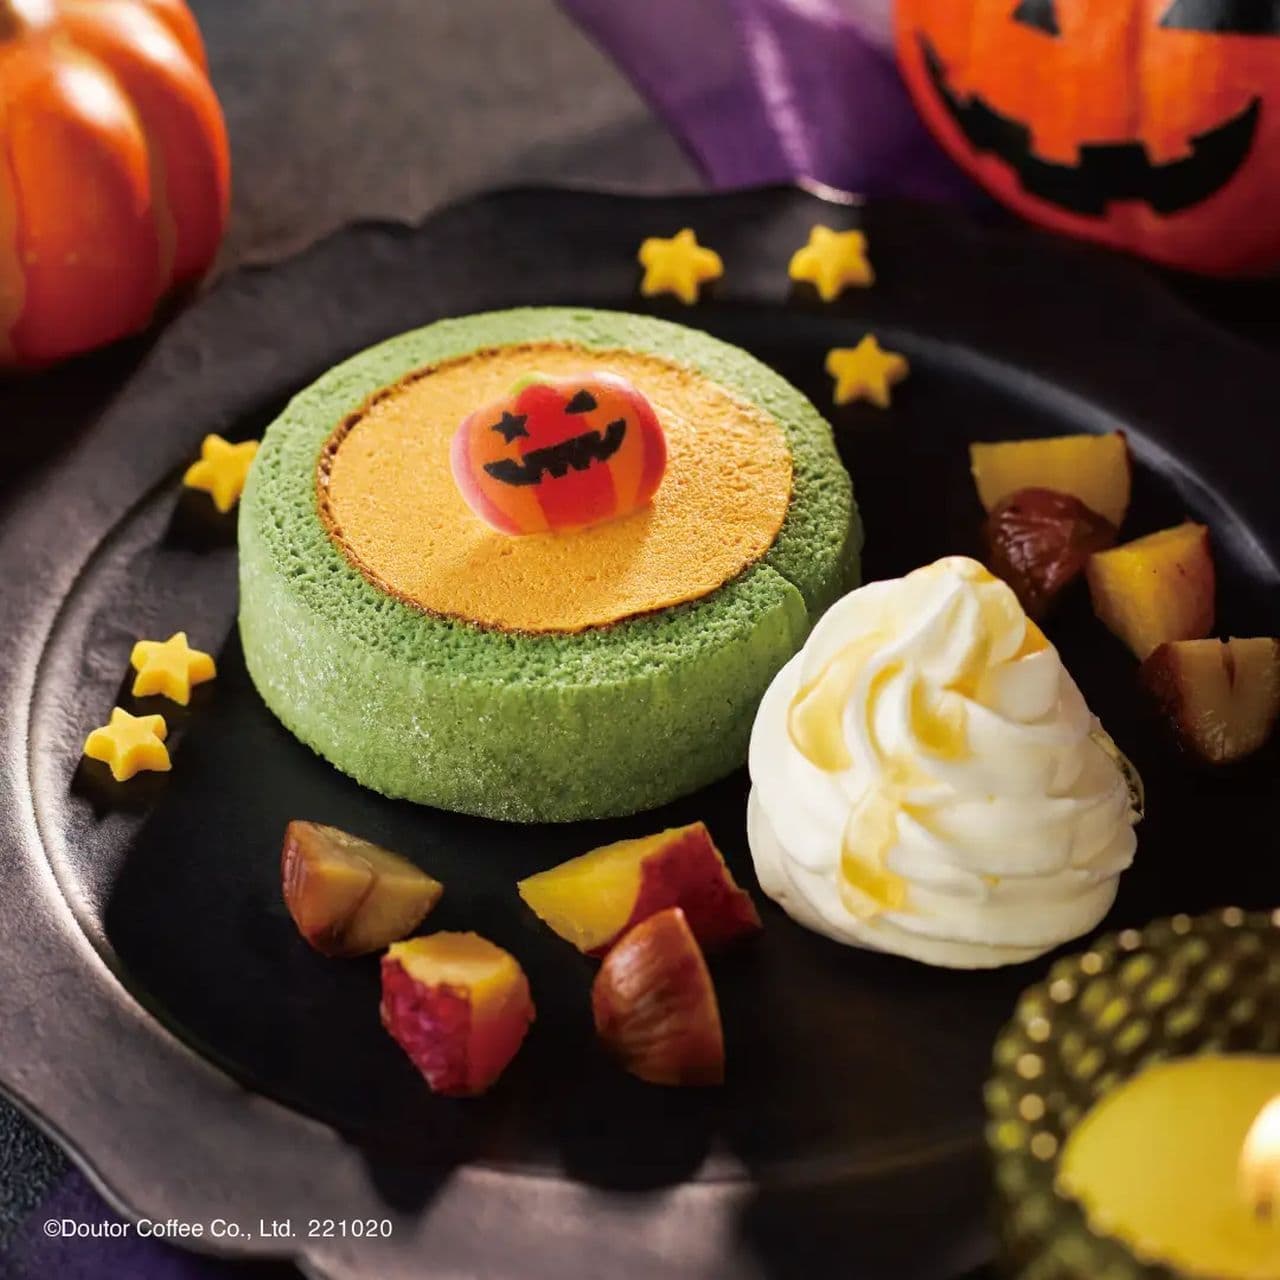 Excelsior Cafe "Dessert Plate to Enjoy Autumn